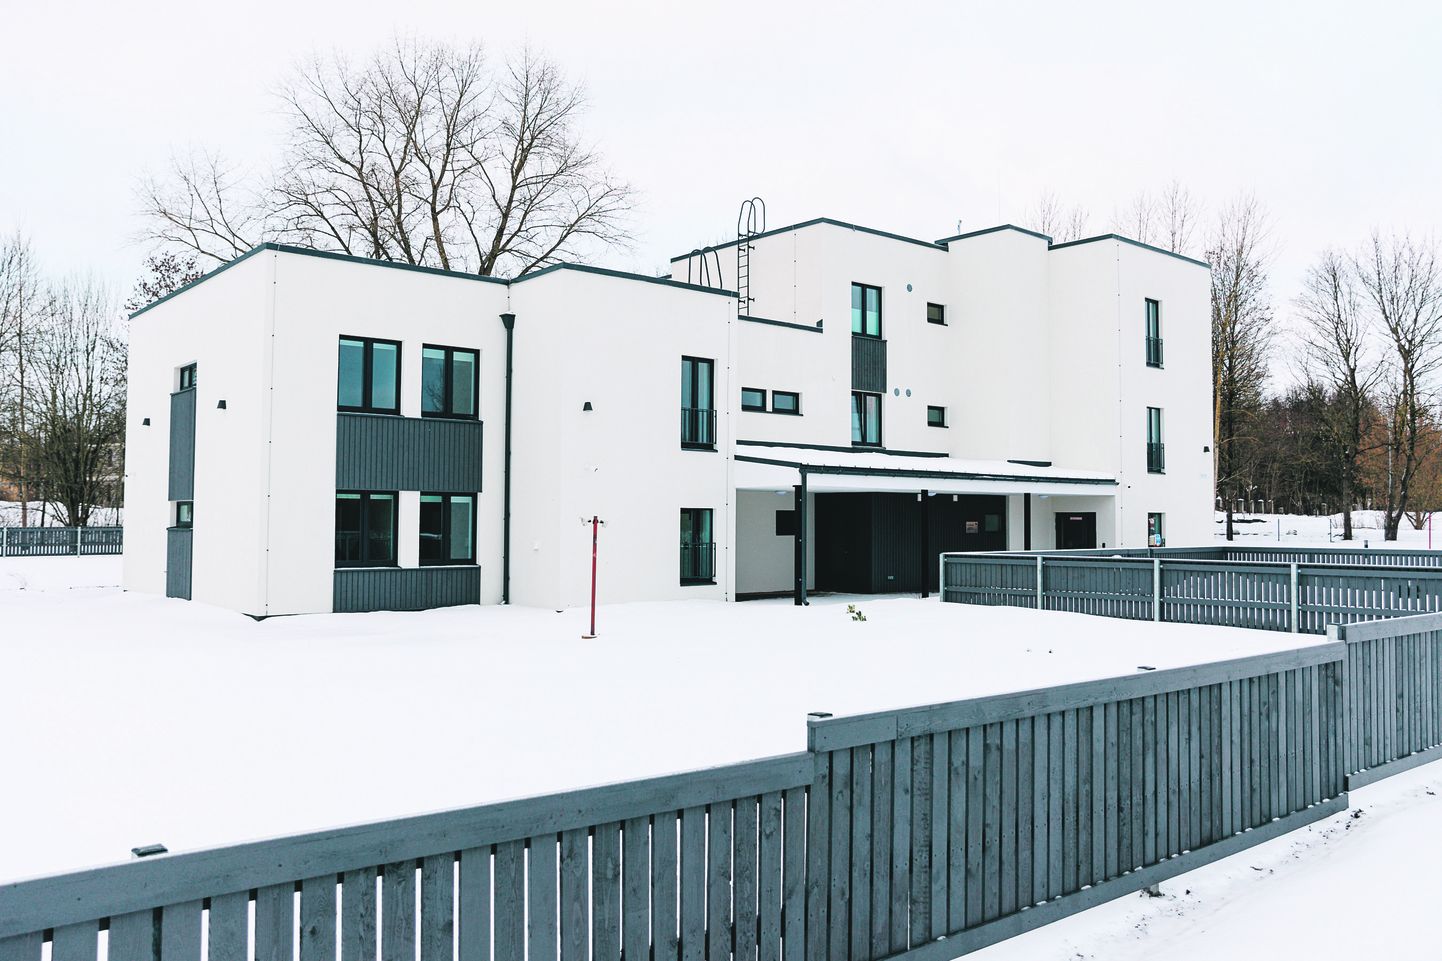 Narva viie korteriga majja kolis jaanuaris 30 inimest. Majas on viis korterit, kolm korrust ja lift.